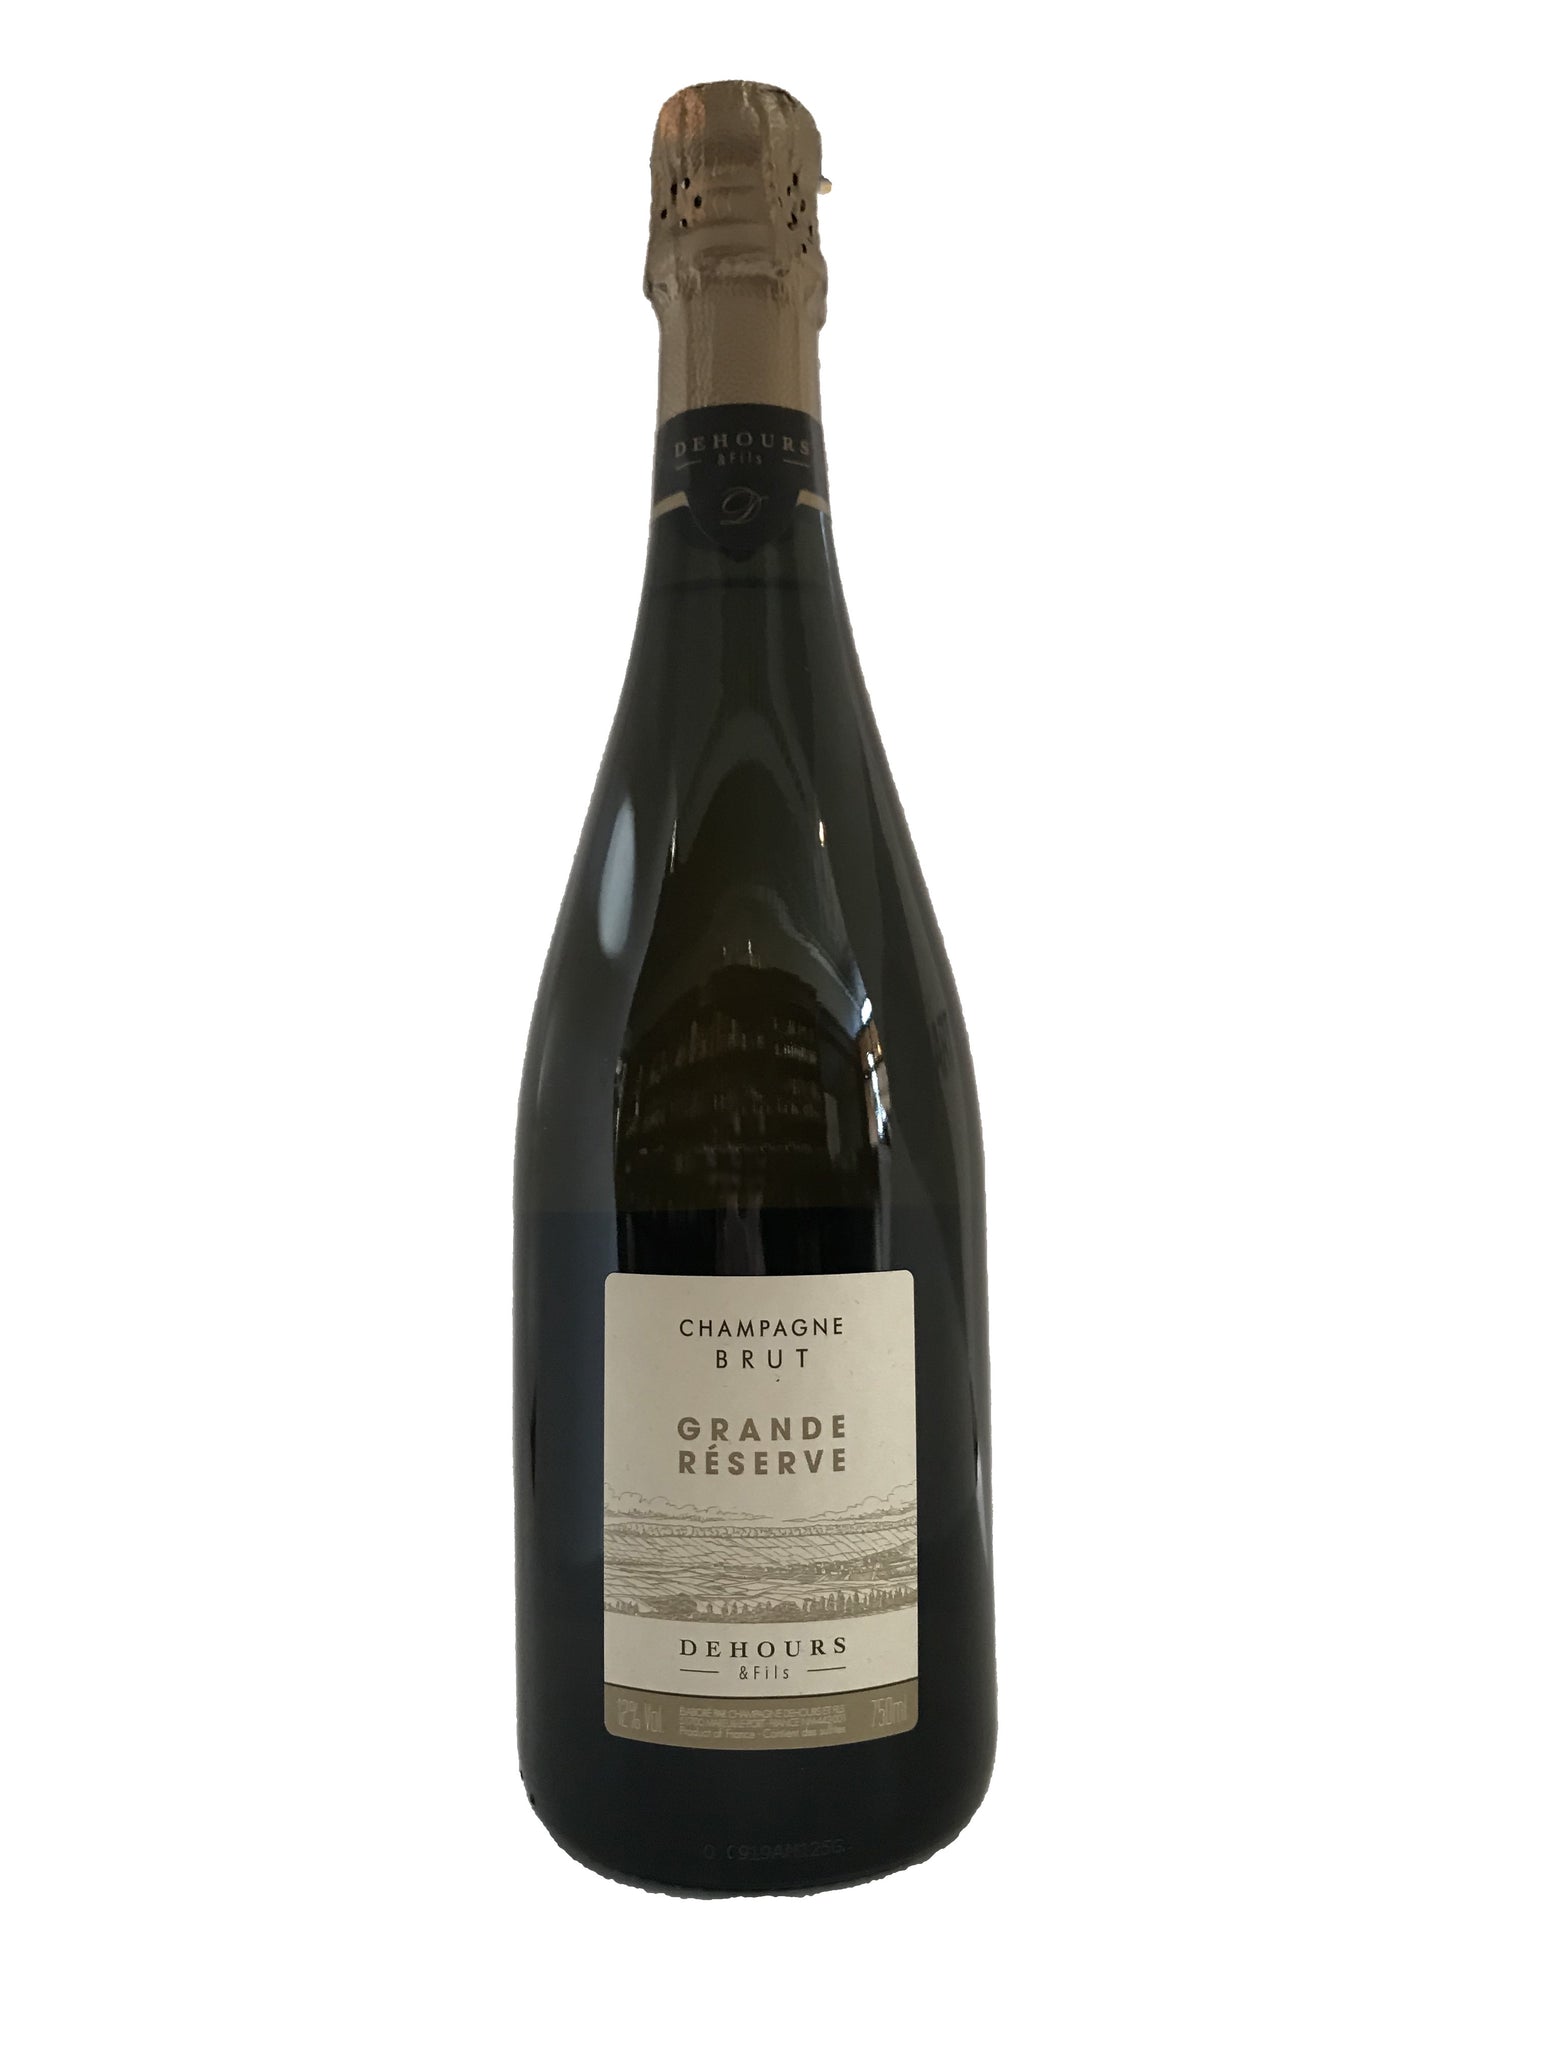 Dehours et Fils Champagne Brut Grande Reserve NV